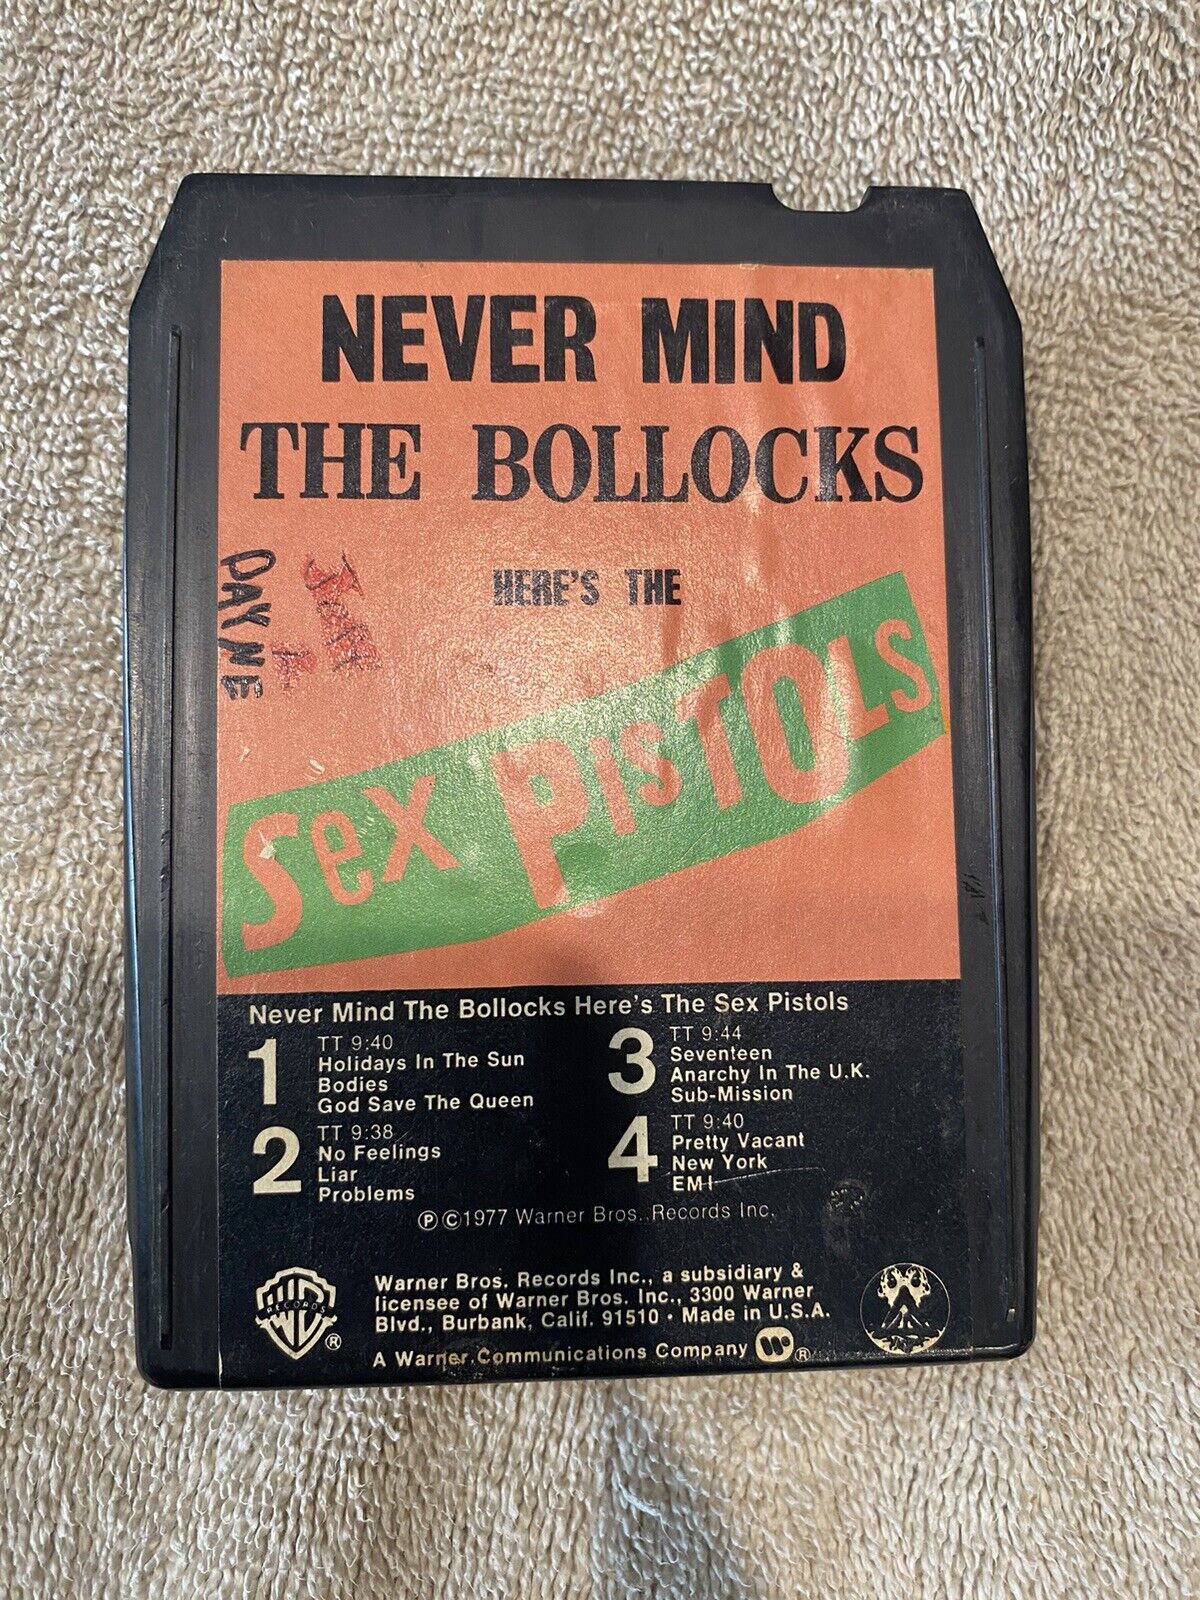 Sex Pistols “Never Mind The Bollocks” Vintage 1977 8 Track Tape (untested) 